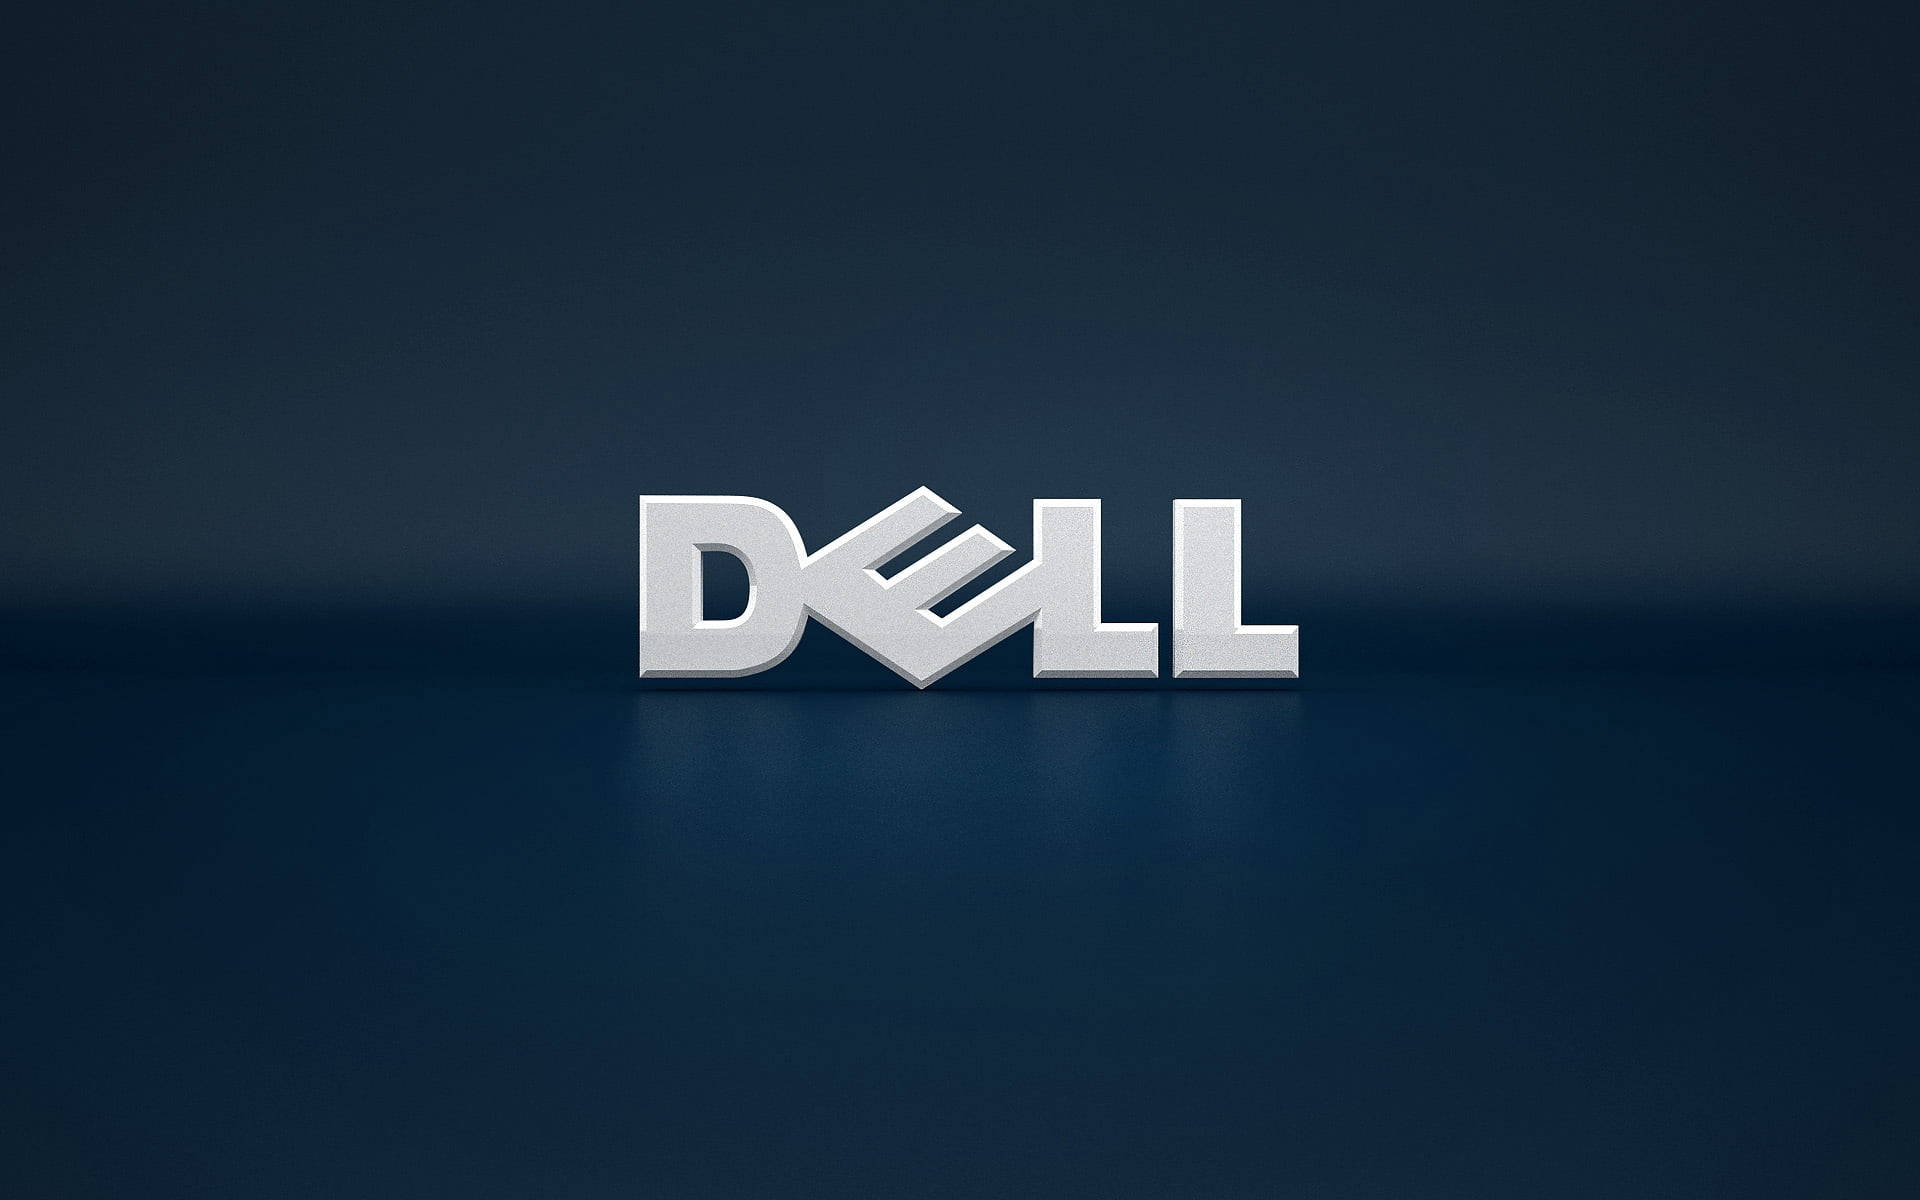 Delllaptop-logotyp I 3d. Wallpaper